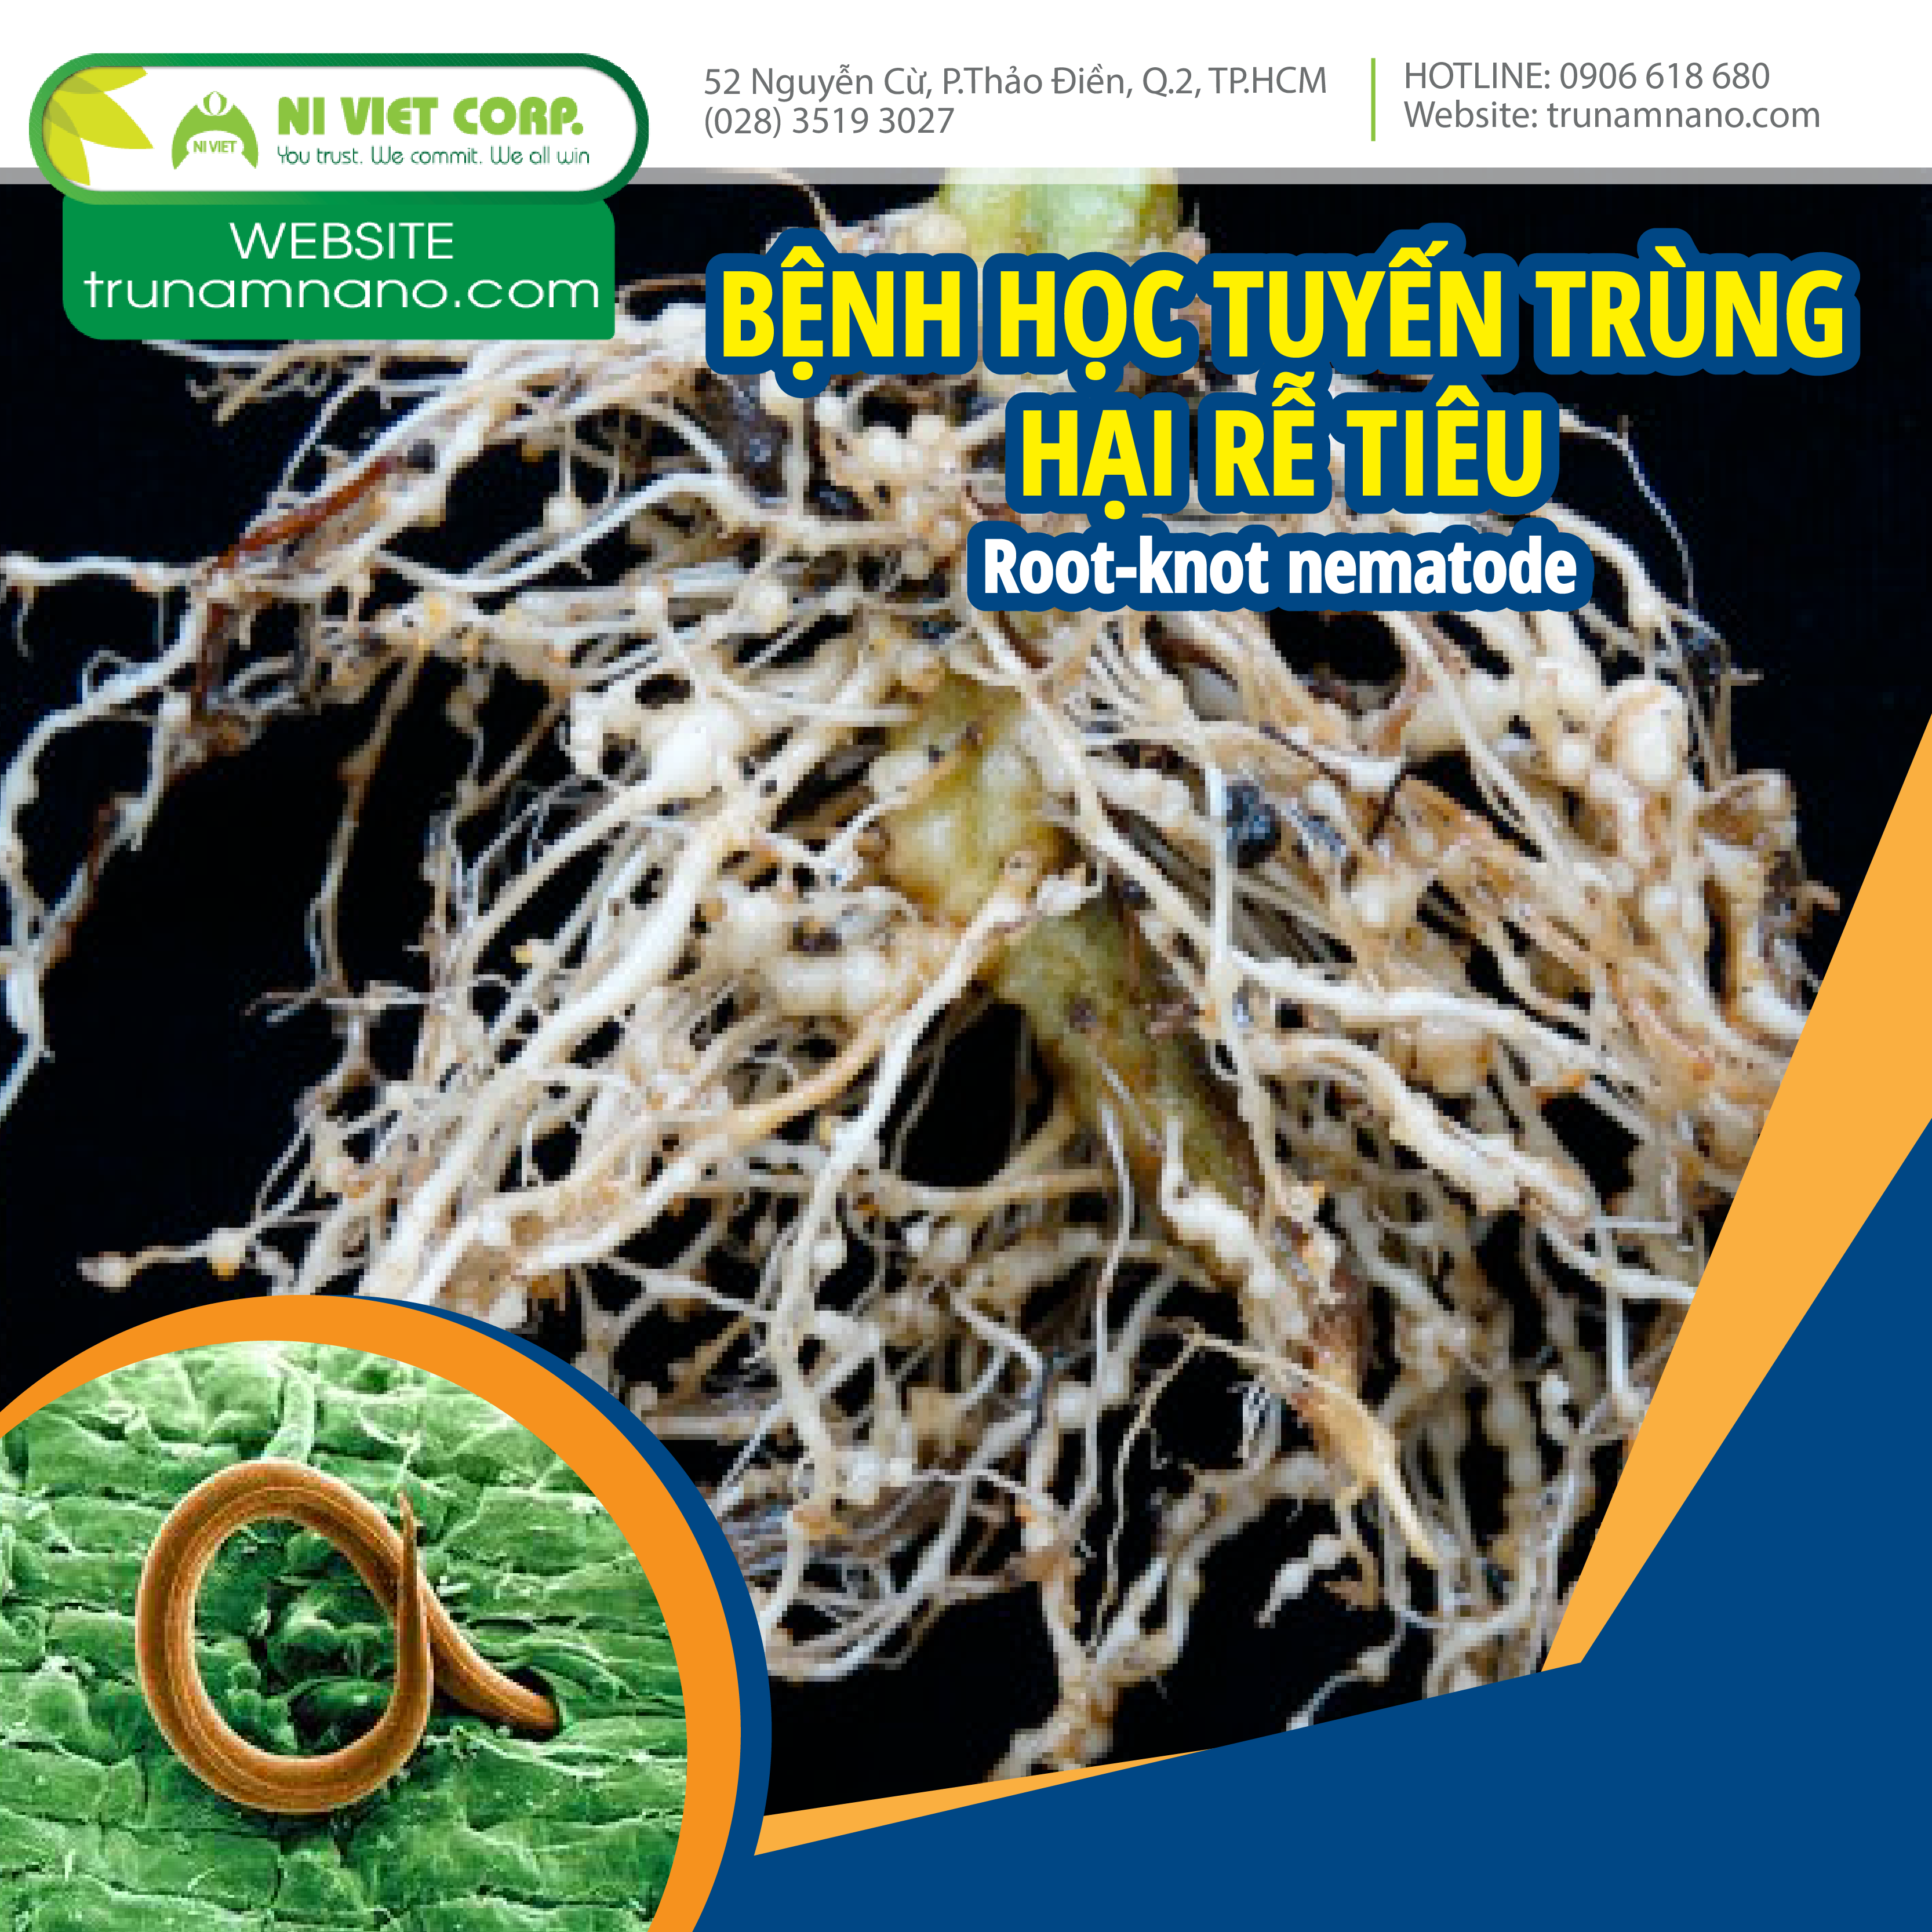 Tìm hiểu tuyến trùng hại rễ tiêu và giải pháp phòng trừ bền vững